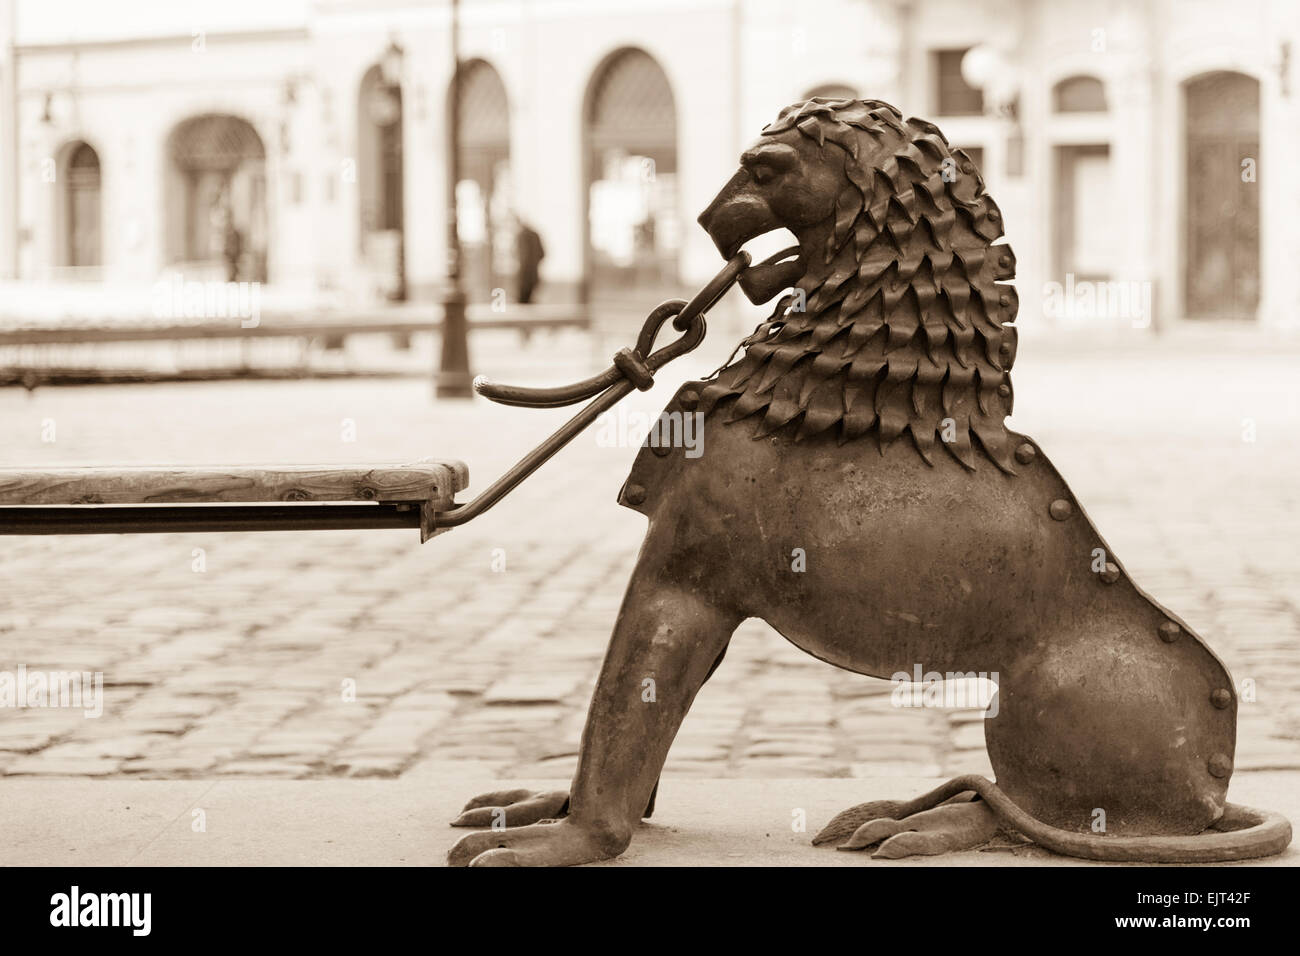 Statue de lion en métal sur la place du marché, Lviv, Ukraine Banque D'Images